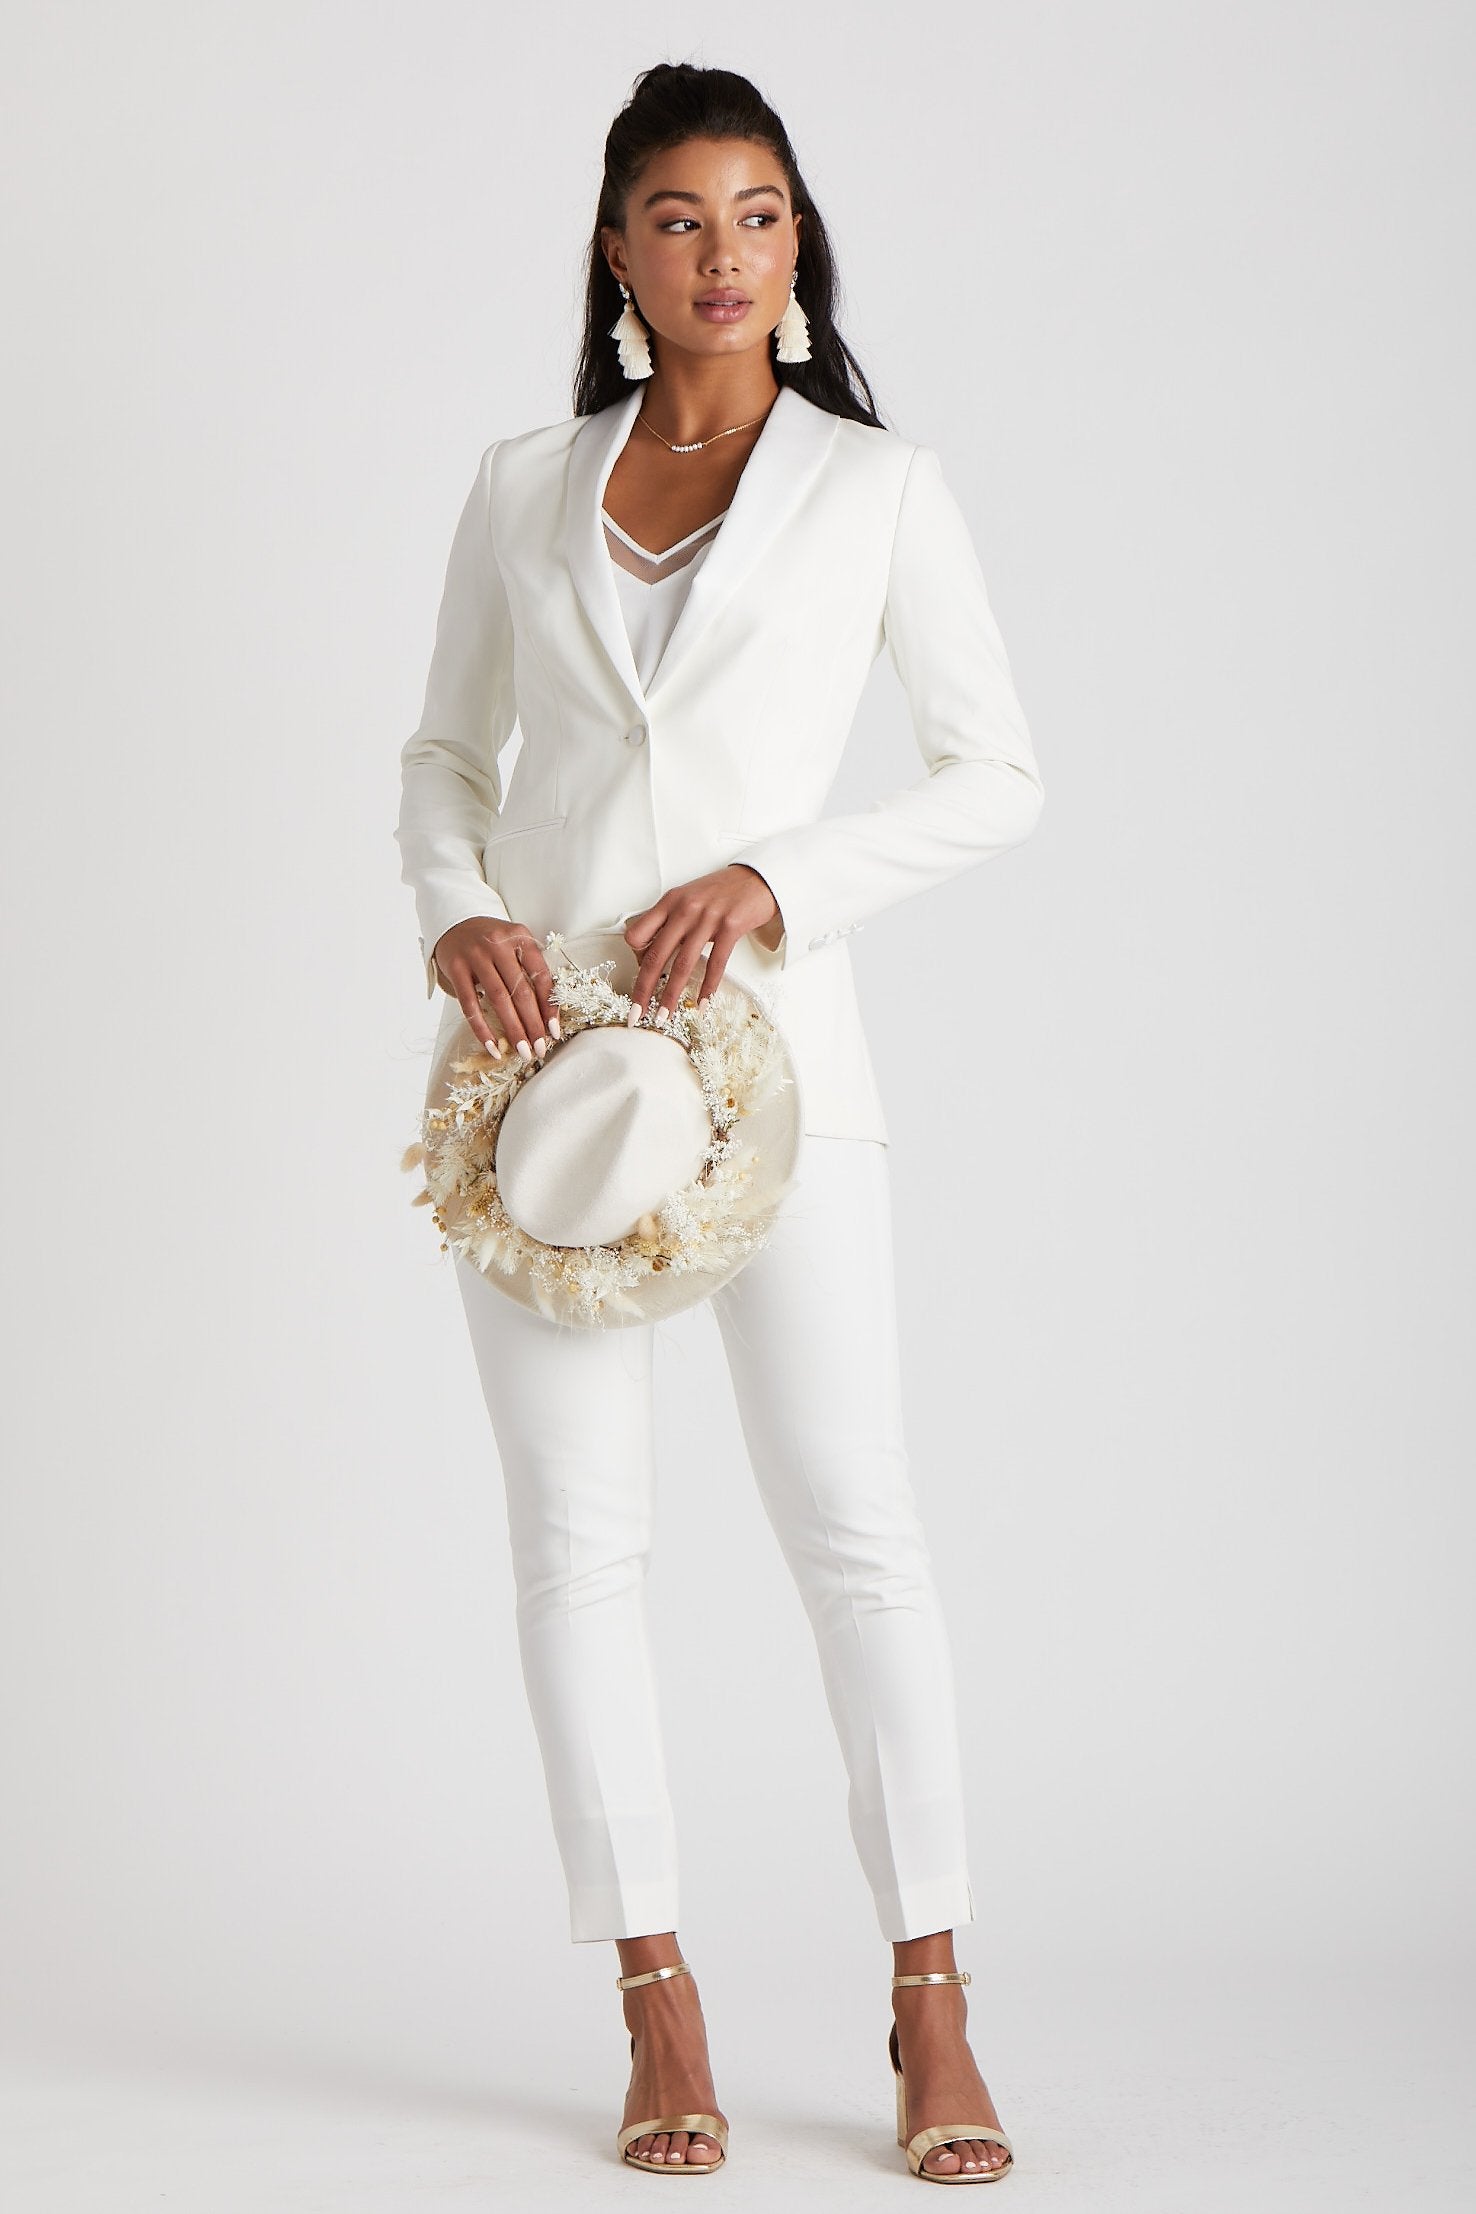 LBECLEY Suits for Women Women's Two Piece Lapels Suit Set Office Business  Long Sleeve Formal Jacket Pant Suit Slim Fit Trouser Jacket Suit with Waist  Belt Pant Suit Junior White Xl -